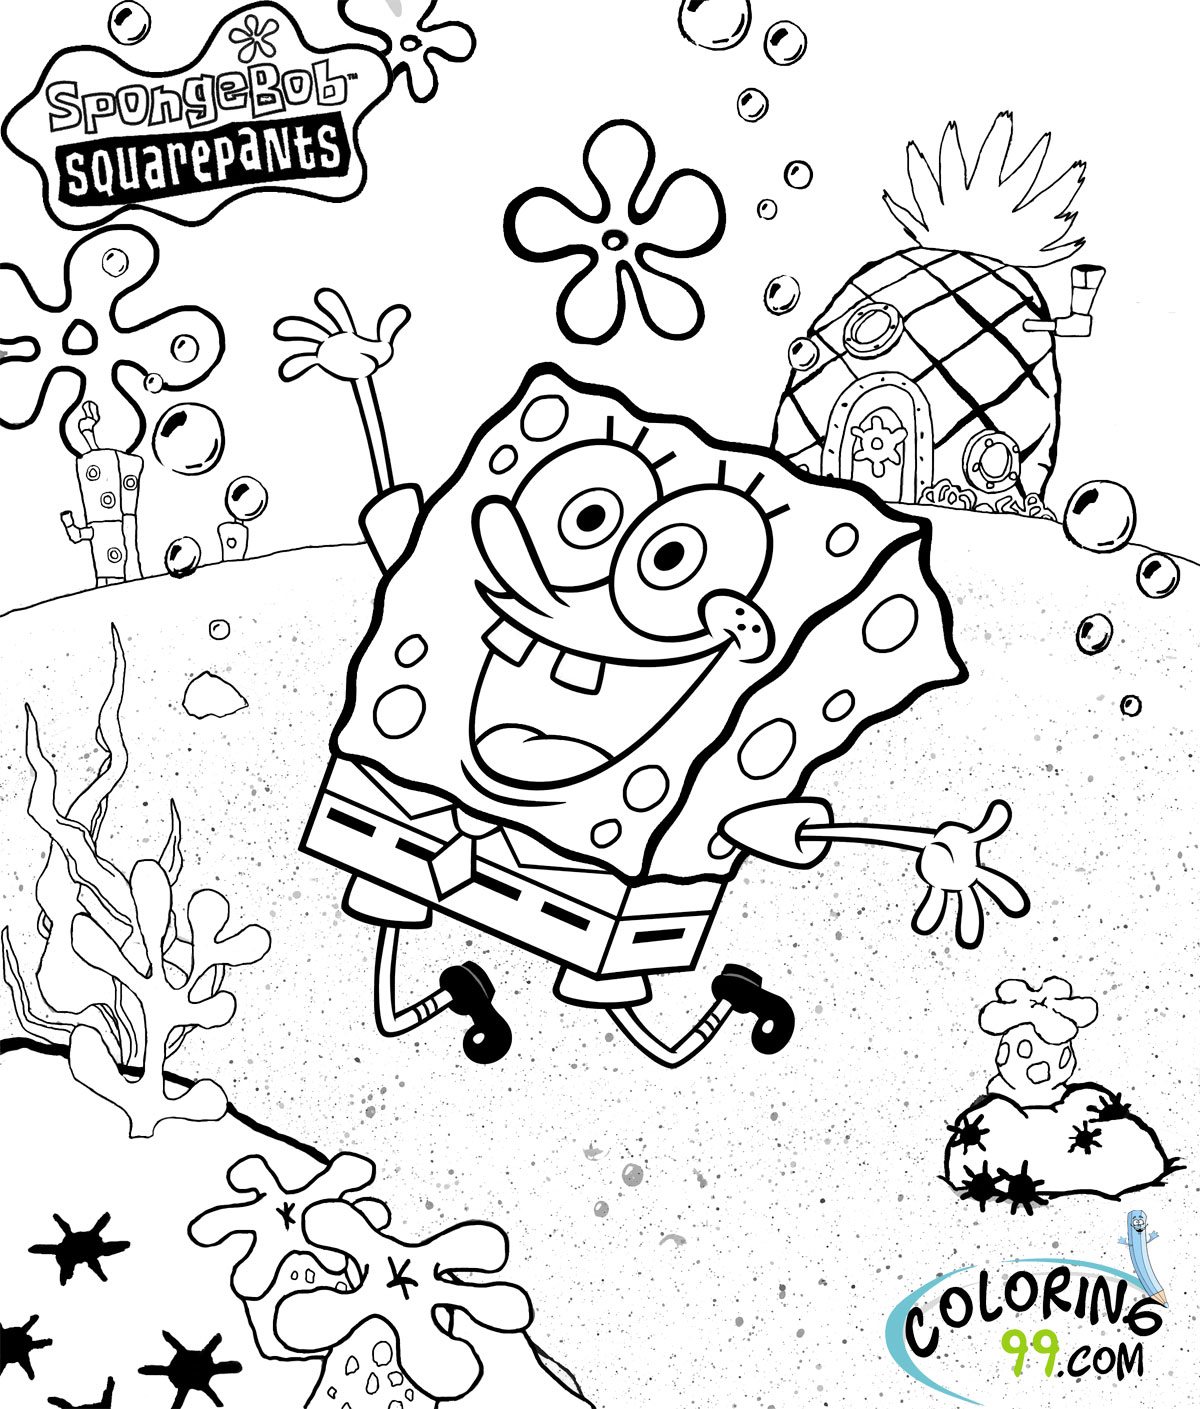 Spongebob Squarepants Coloring Pages | Team colors